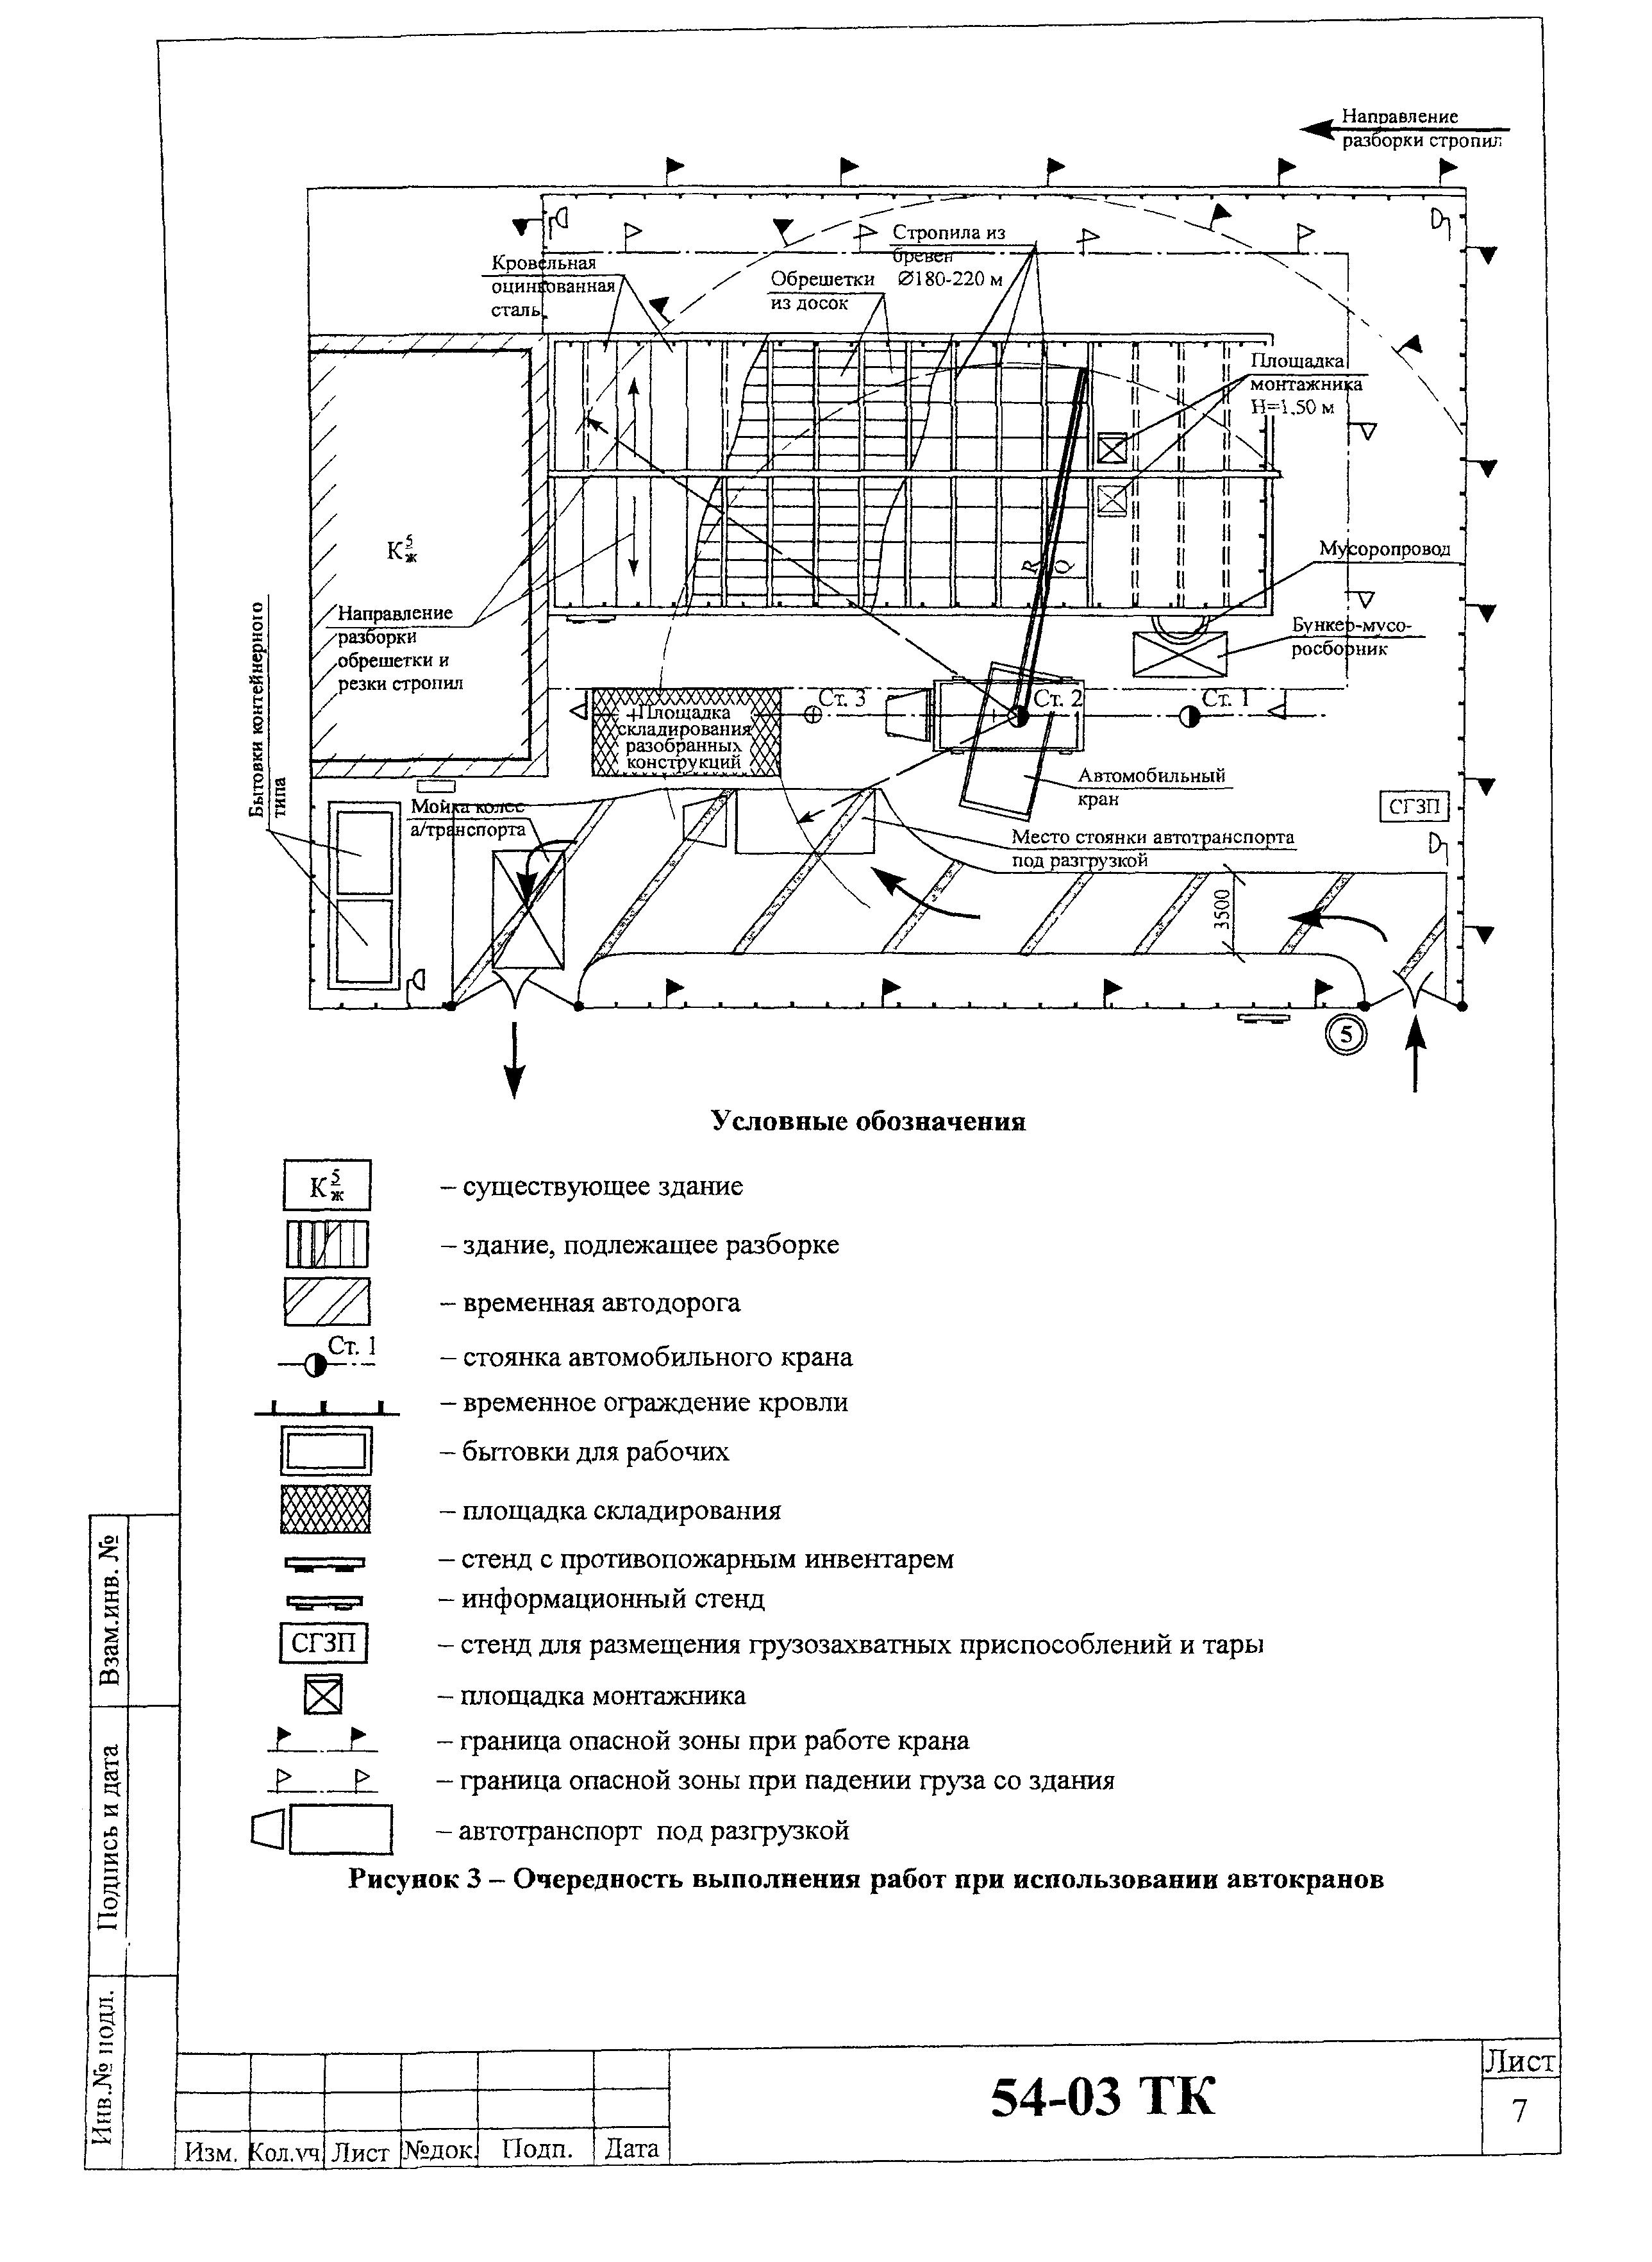 Технологическая карта 54-03 ТК